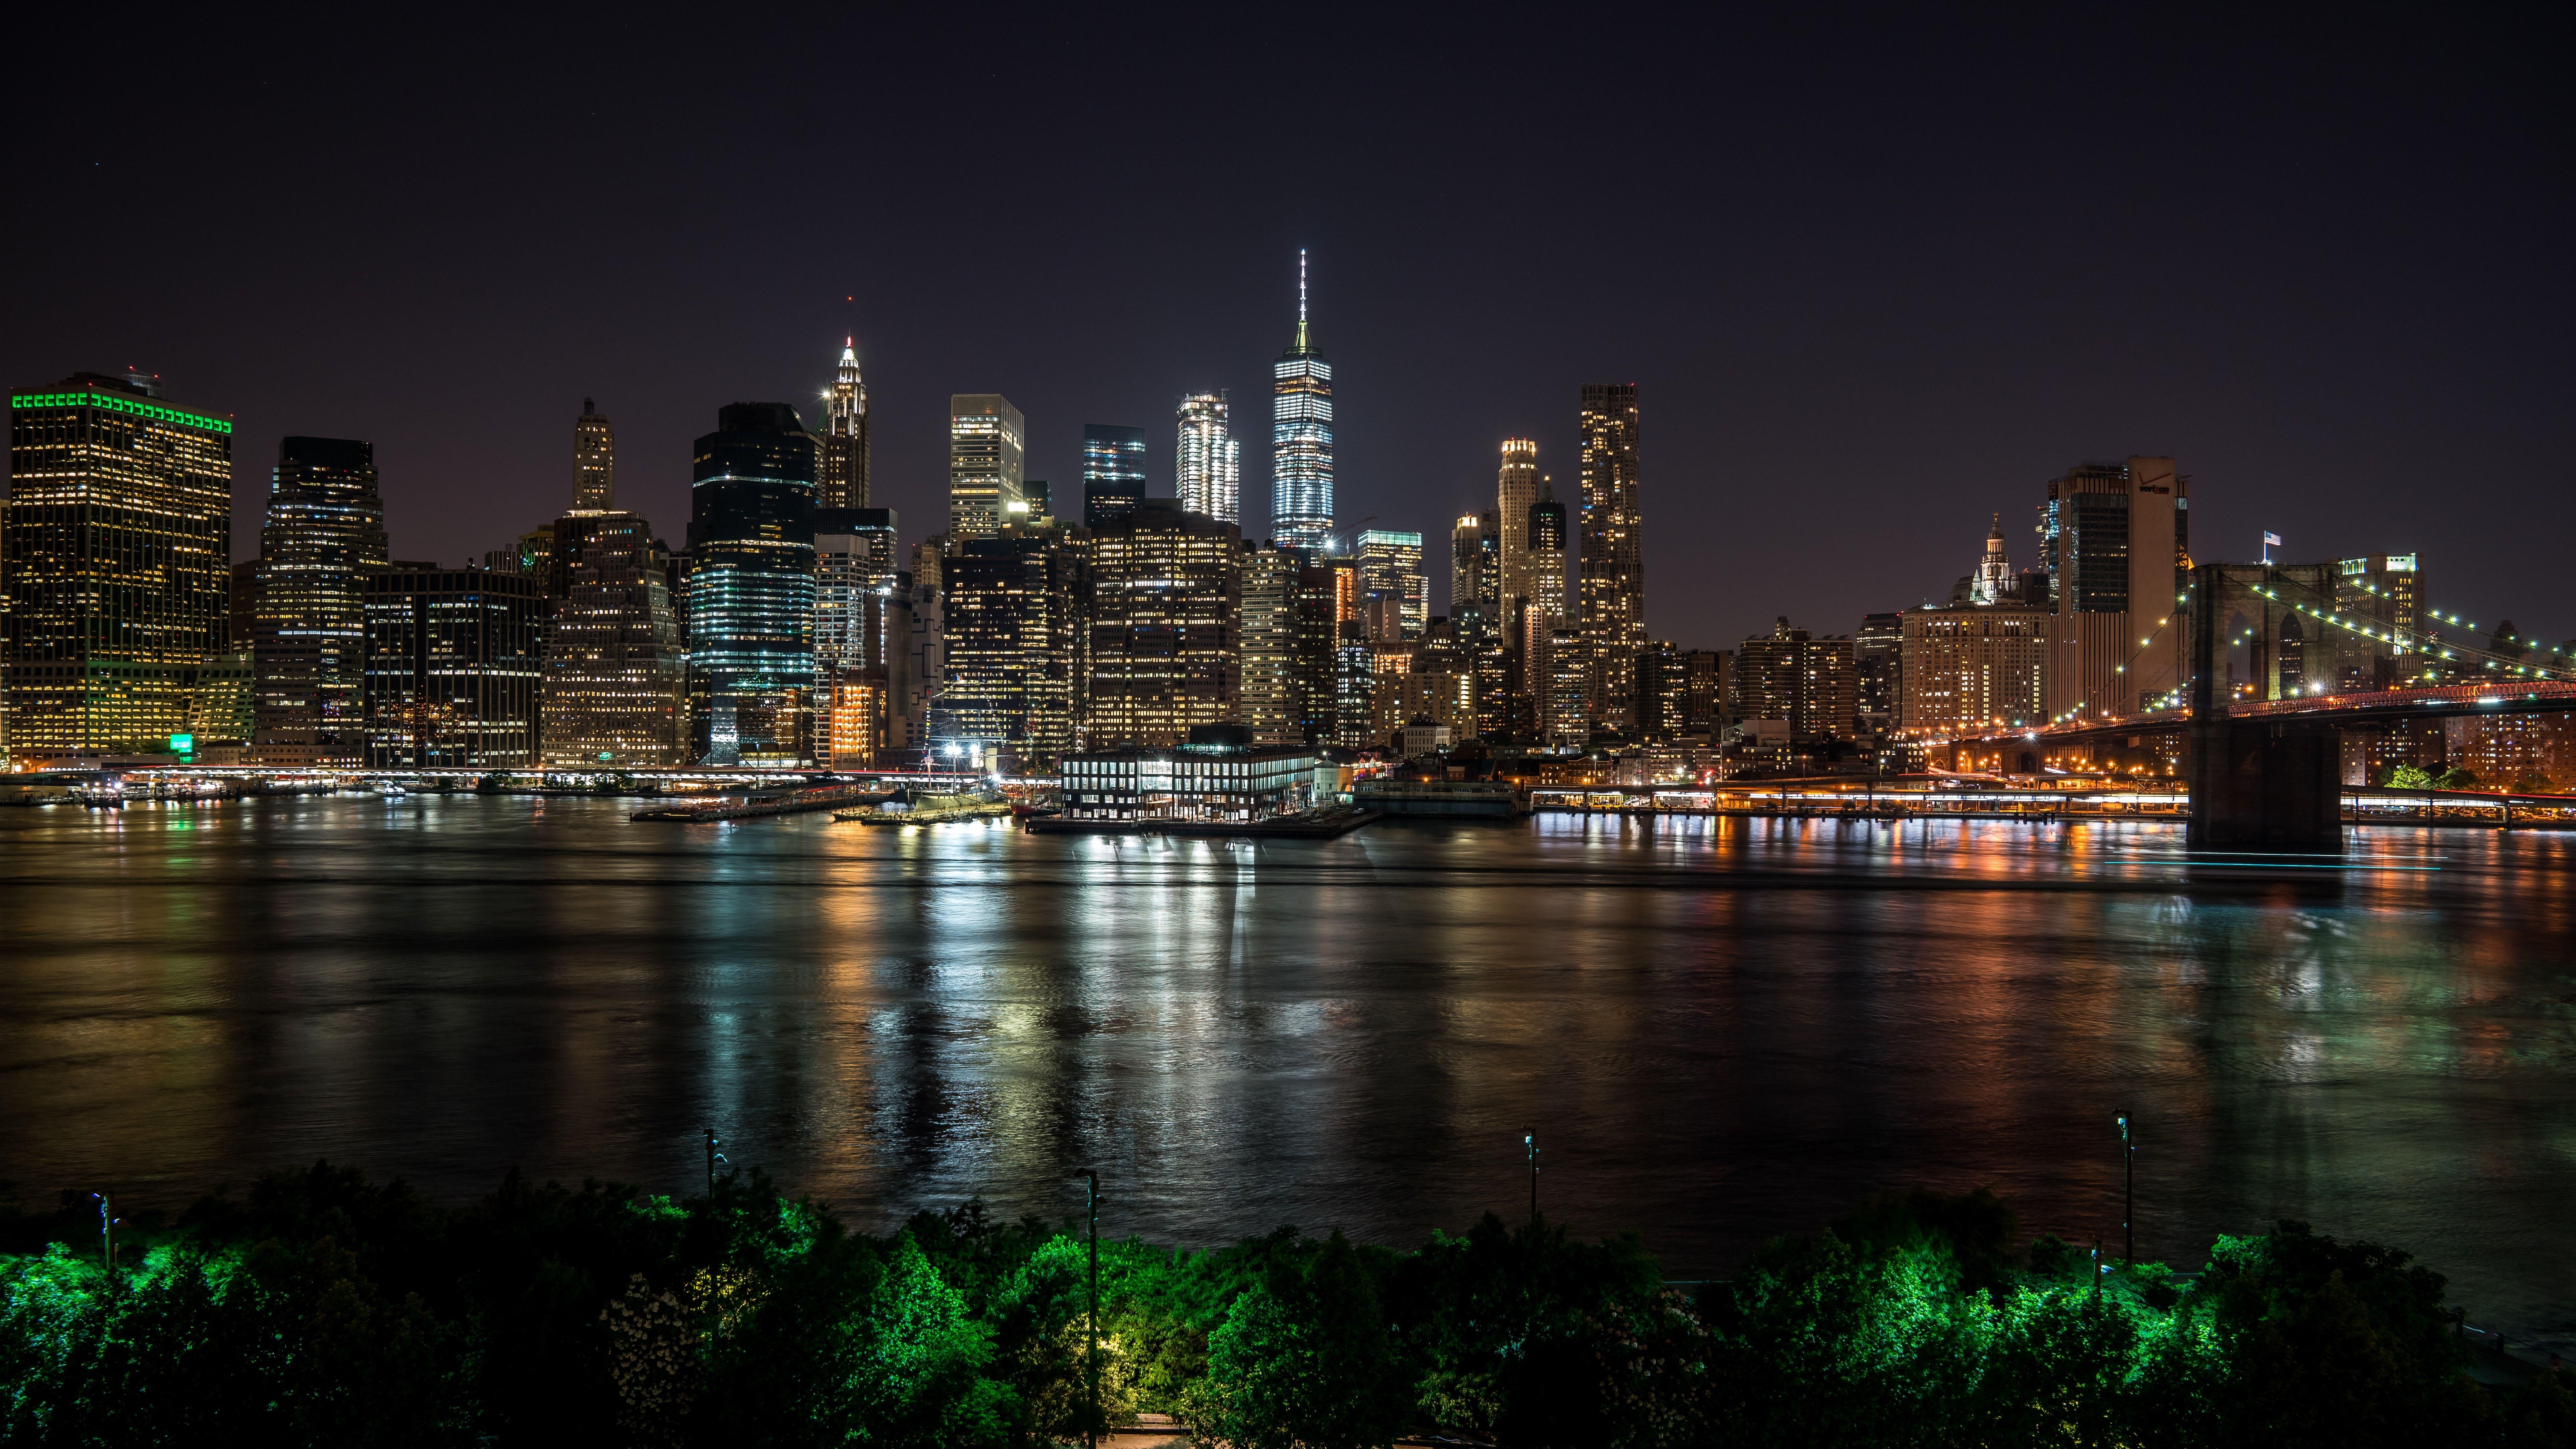 7680x4320 Hình nền New York Vào ban đêm, Thành phố, Con sông, Nhà chọc trời - 8k